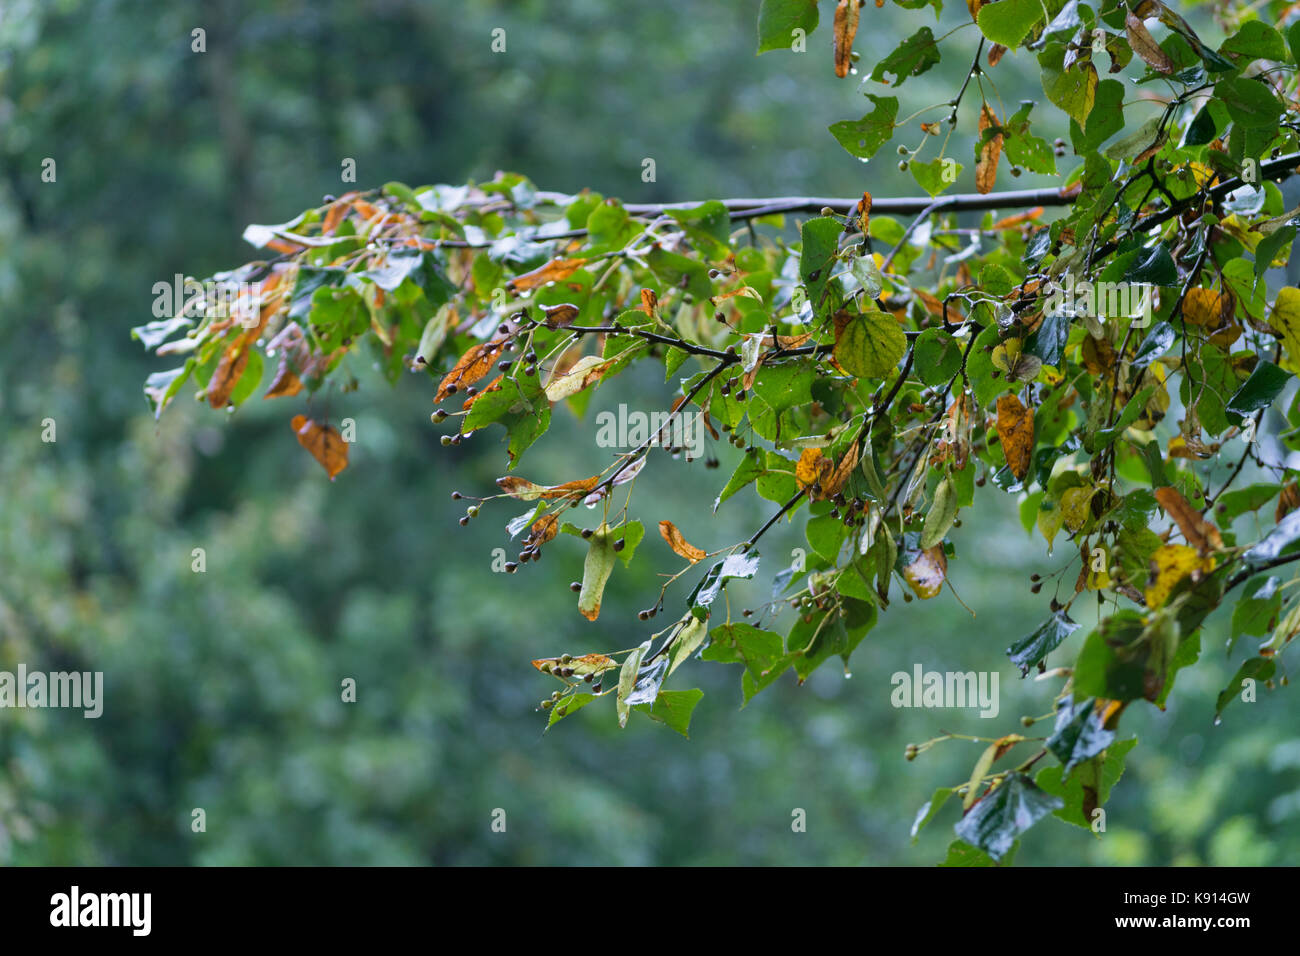 Natura 2000, Kraków, Pologne, l'Europe. 20 Sep, 2017. Warszawa, Pologne. 20 Sep, 2017. Météo. L'un des derniers jours de l'été 2017. Pour une douzaine d'heures, il pleut intensément, journée cool et même froid, le brouillard se forme. Les premiers signes de l'automne apparaissent dans les arbres en changeant la couleur des feuilles qui tombent. L'automne approche inévitablement de 2017. Credit : w124merc/Alamy Live News Banque D'Images